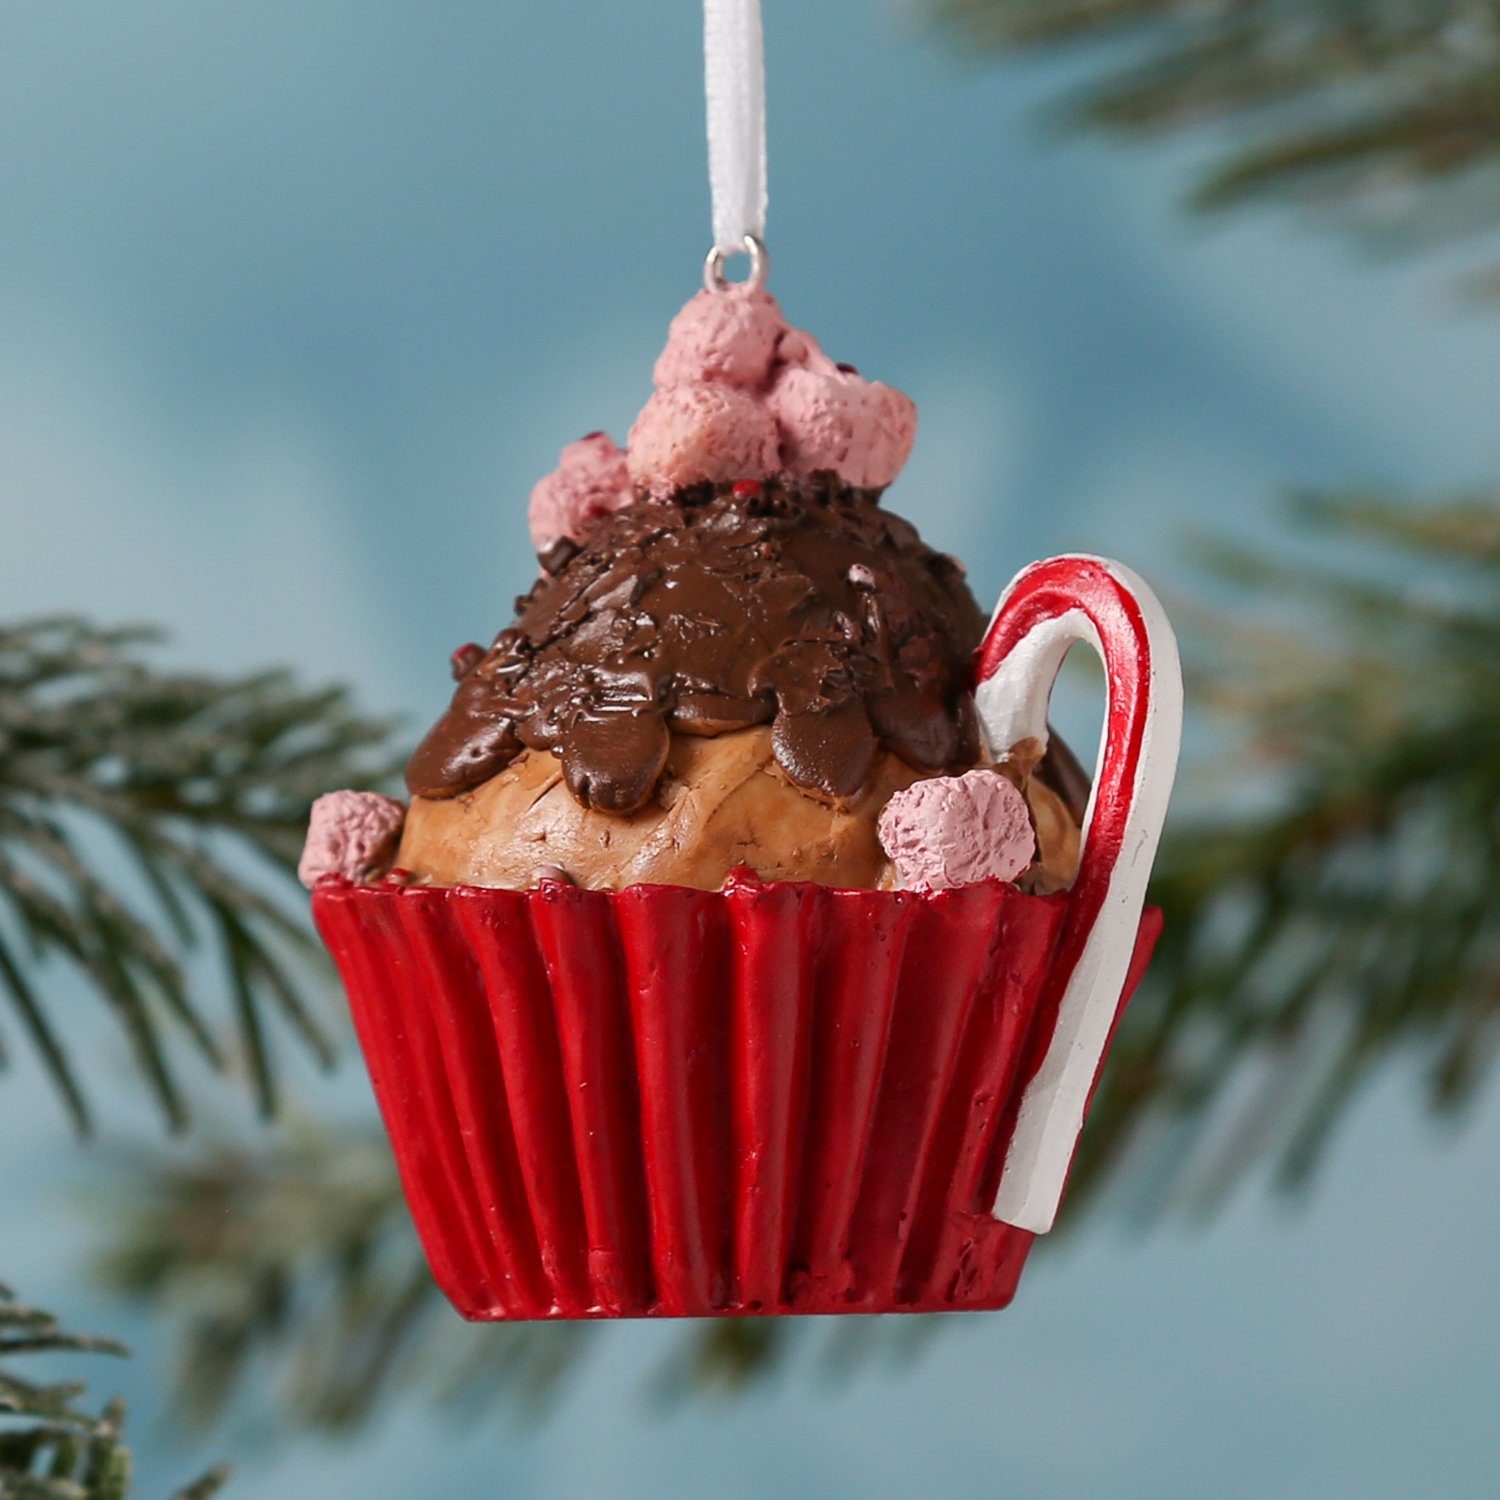 MARELIDA Christbaumschmuck Weihnachtsbaumschmuck Muffin Cupcake Törtchen Geschenk H: 8cm braun